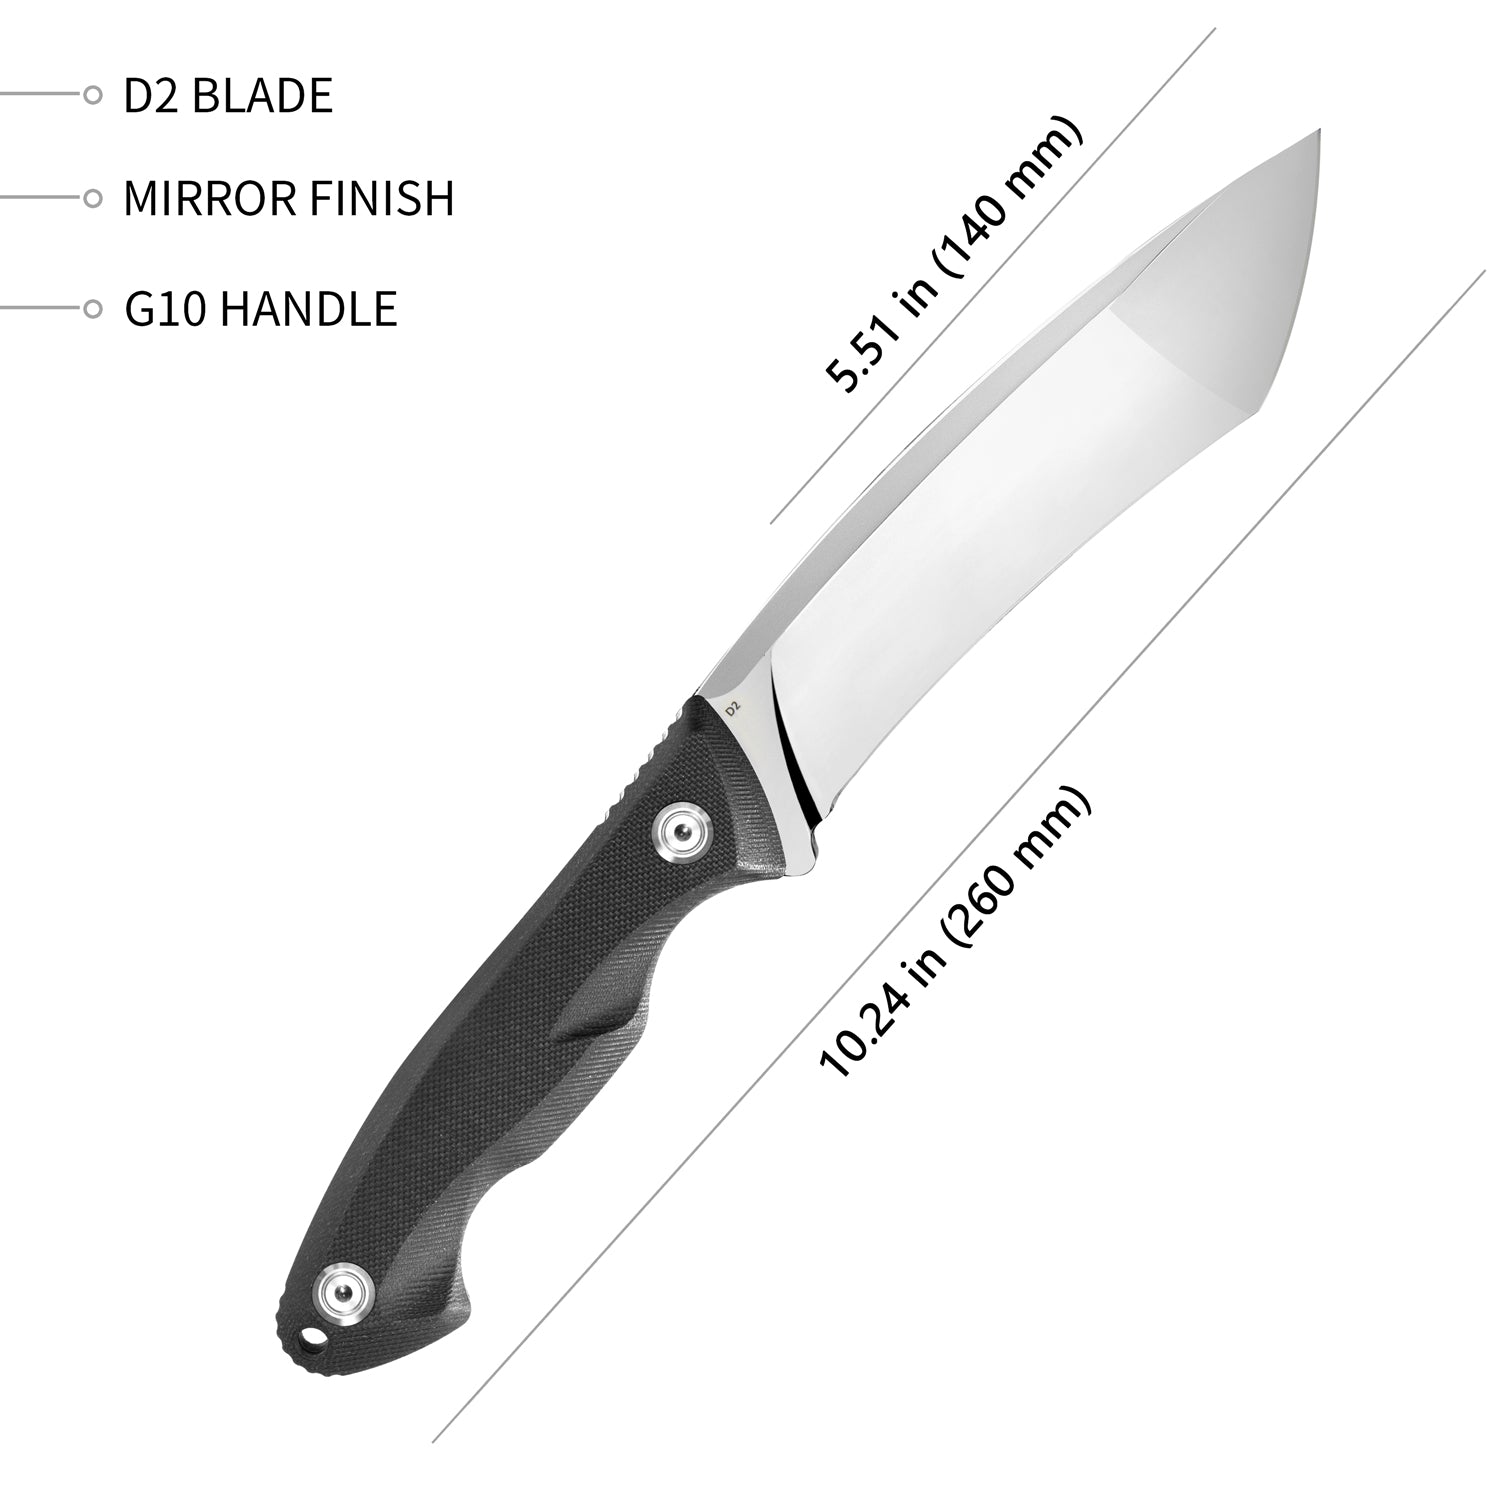 Kubey Chariot Outdoor-Messer mit feststehender Klinge, G10-Griff (5,5" verspiegelt, D2)KB274A